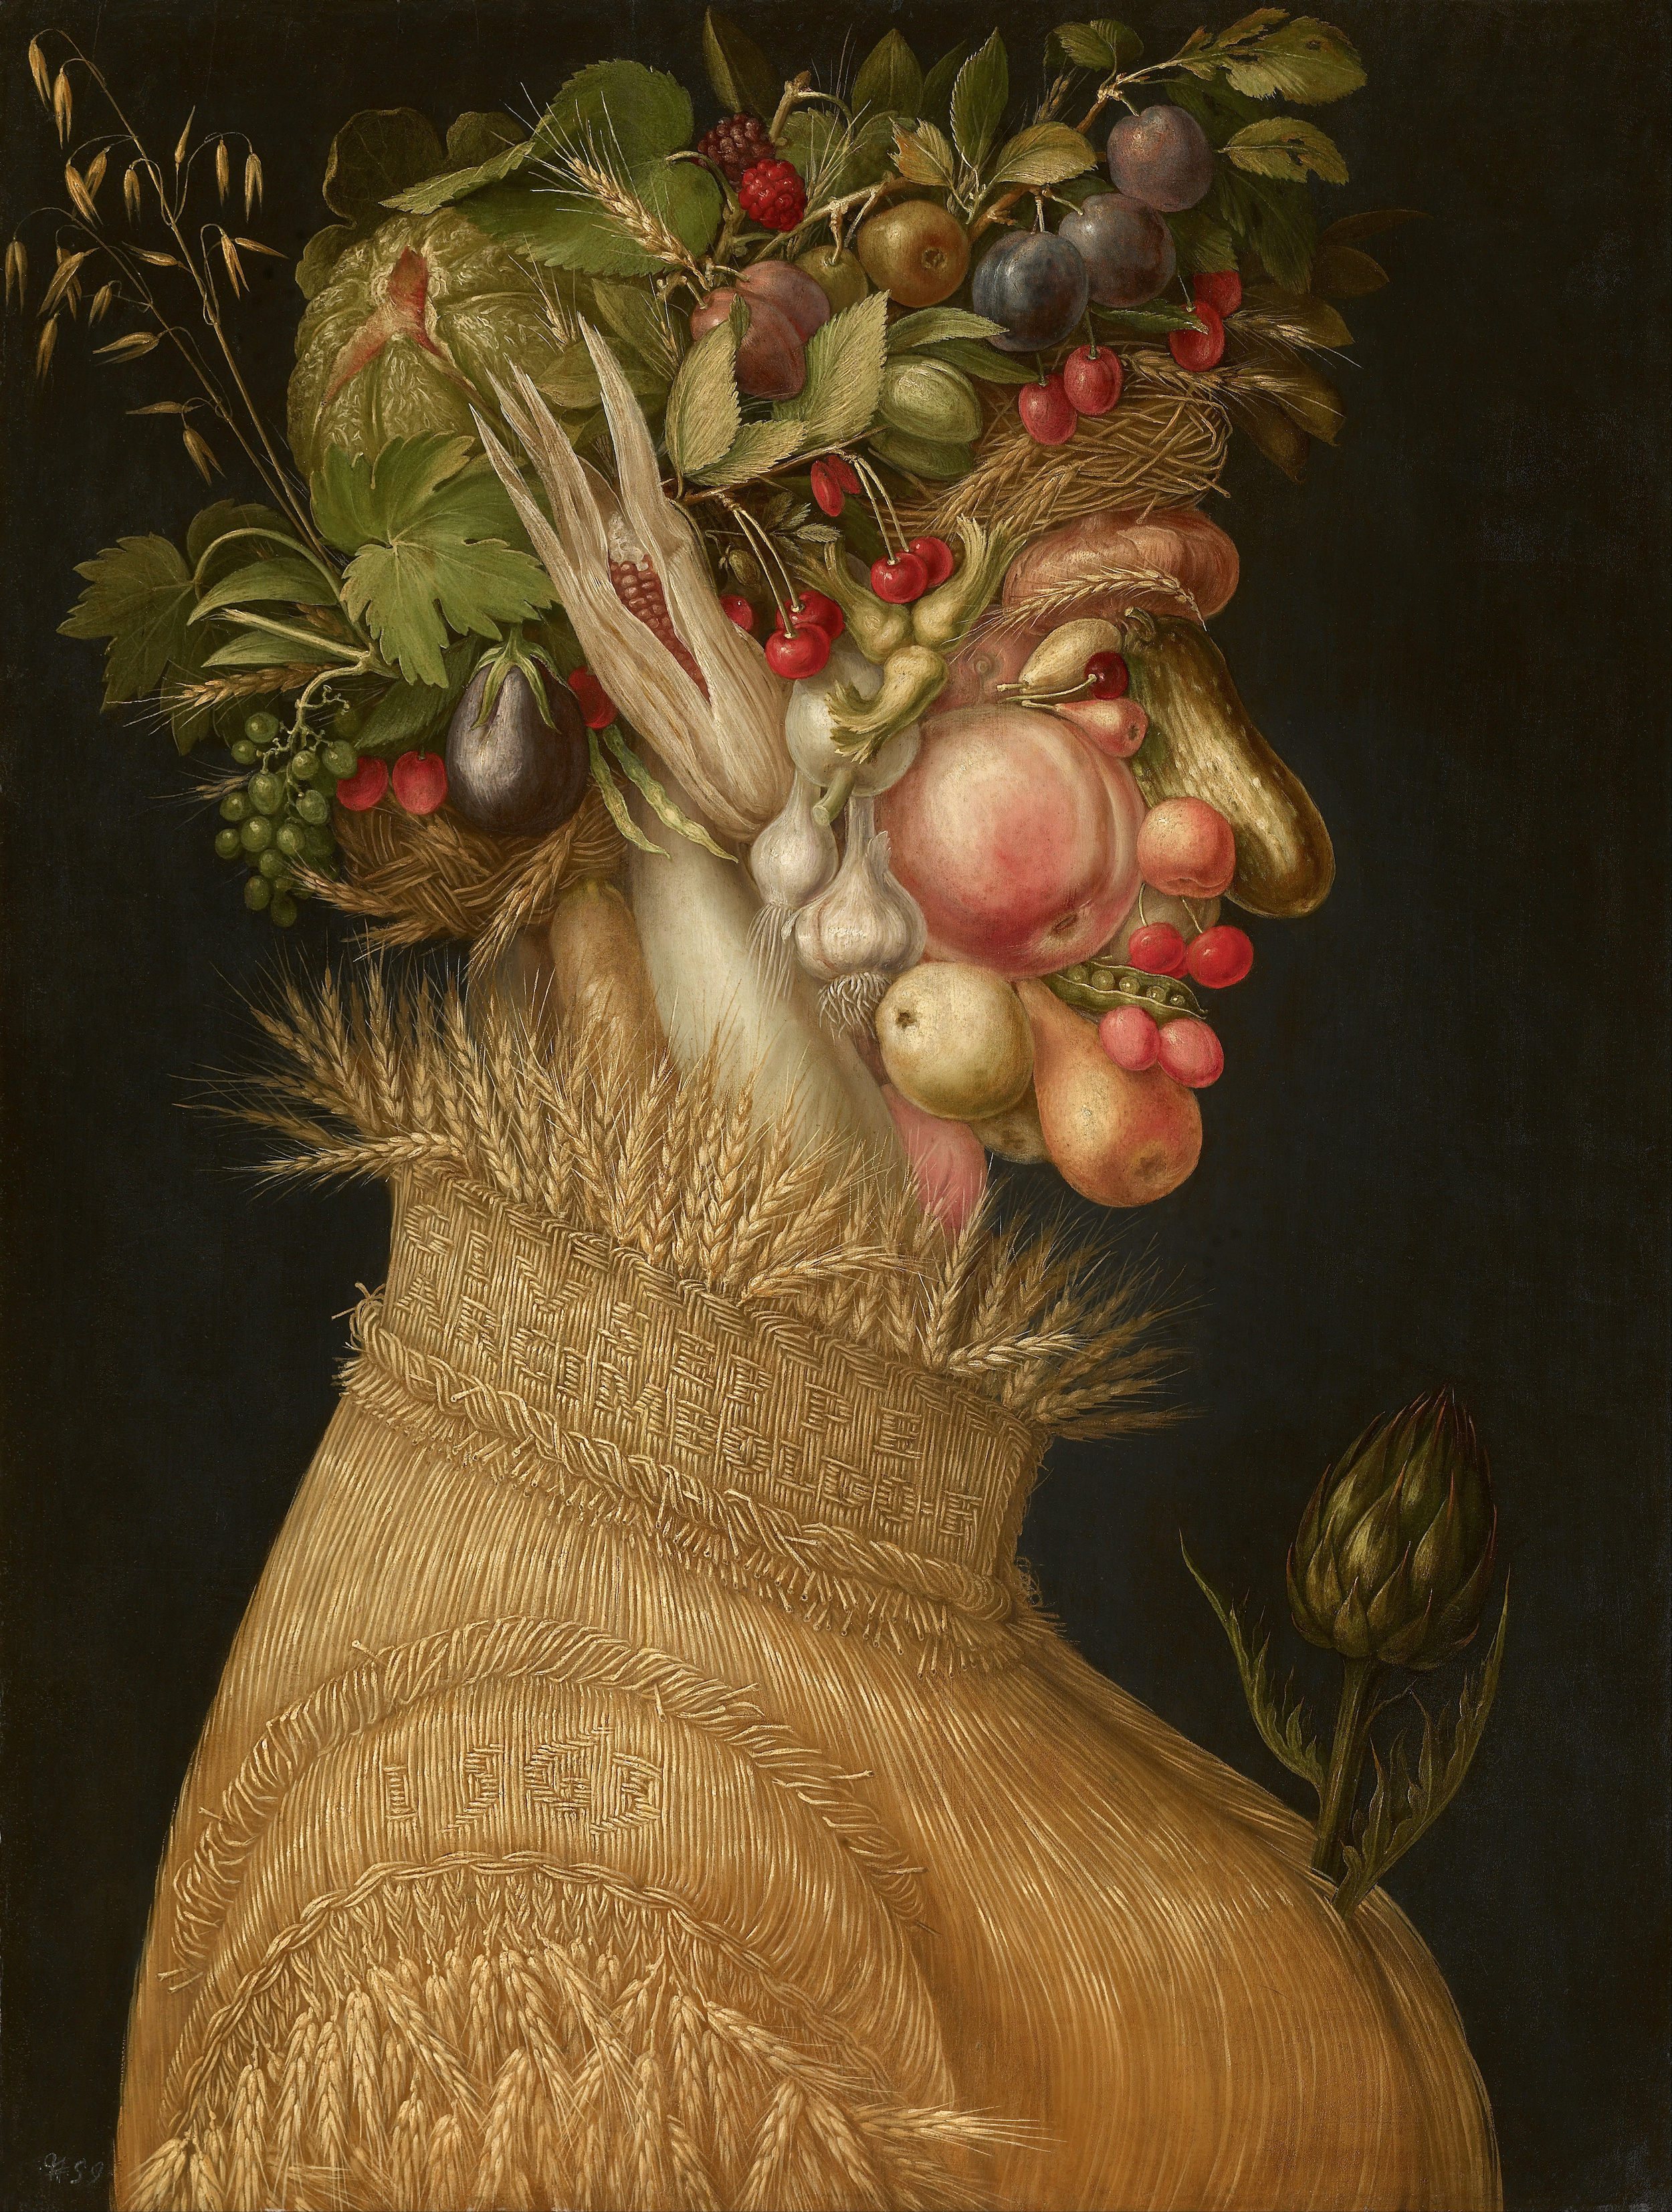 夏天 by Giuseppe Arcimboldo - 1563 - 50.8 x 67 cm 